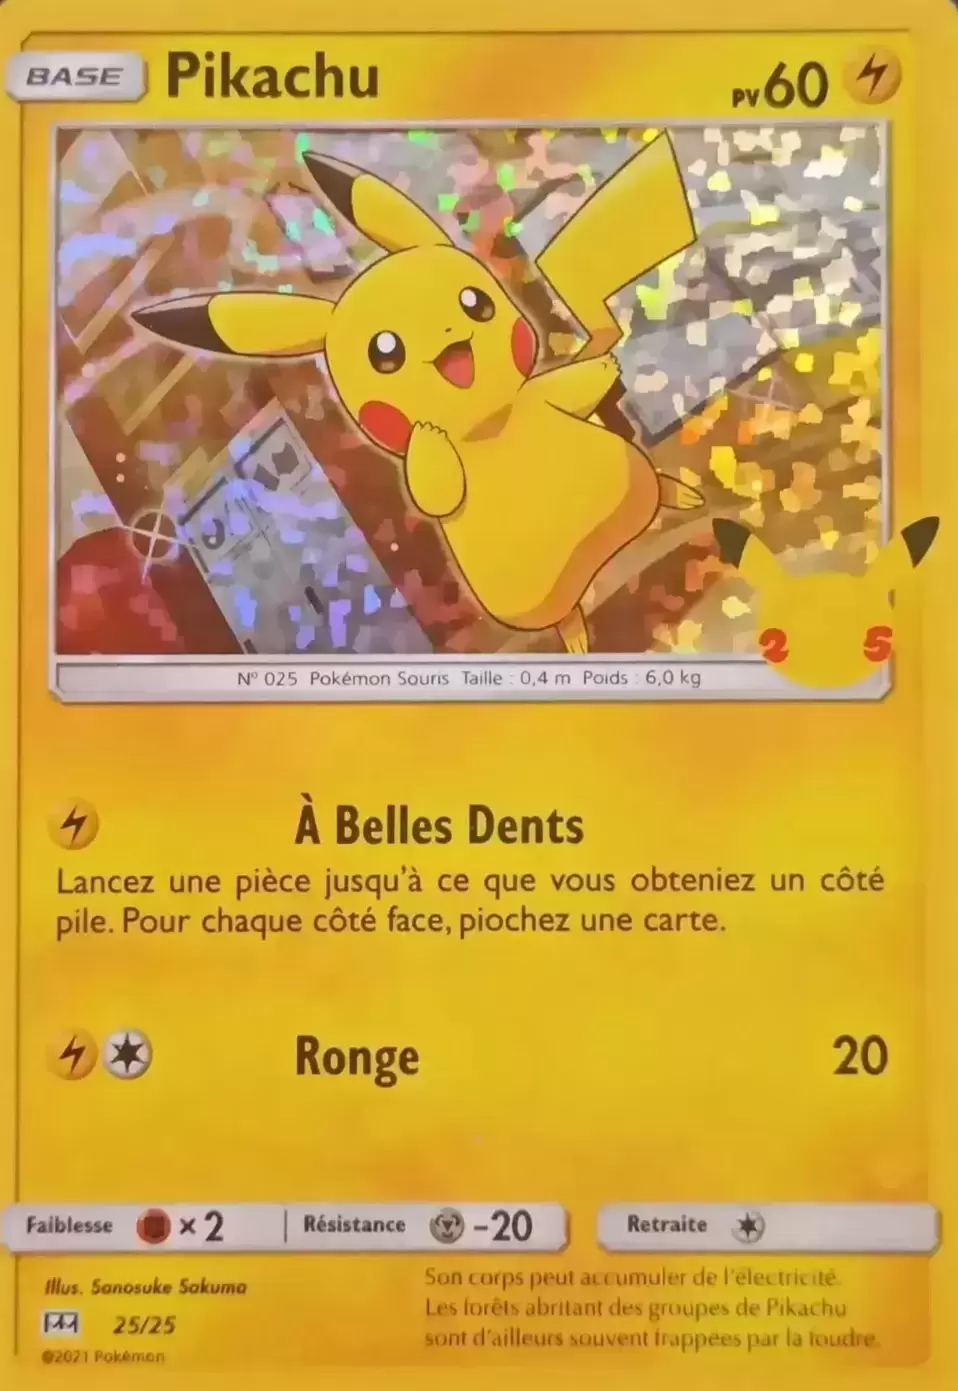 Quel est le prix de la carte Pokémon Pikachu holographique ?